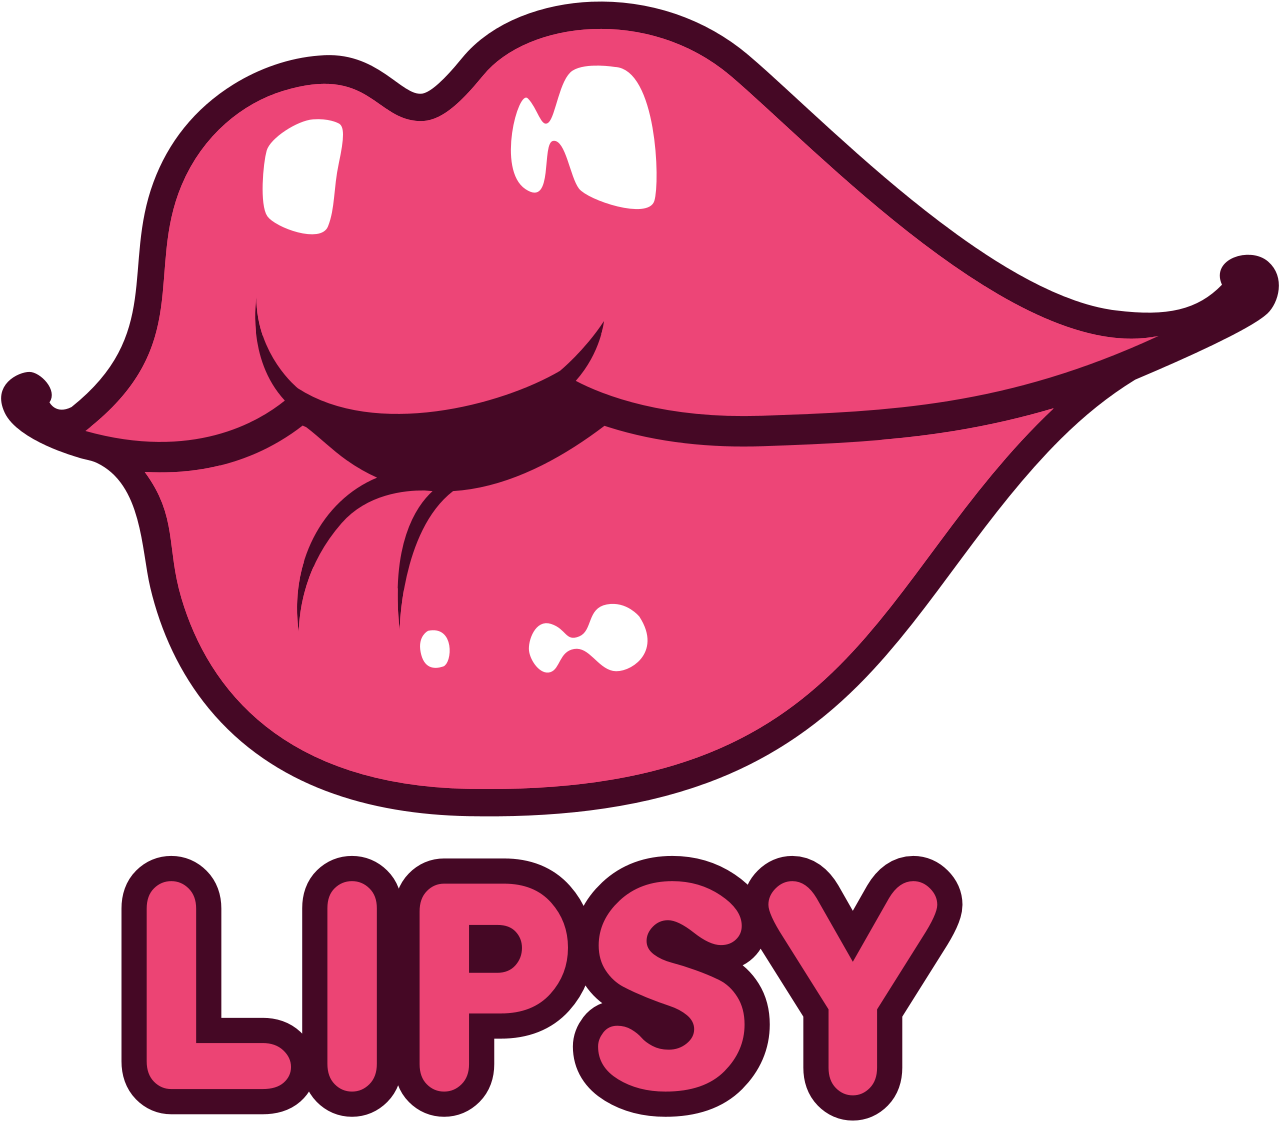 Lipsy's logo